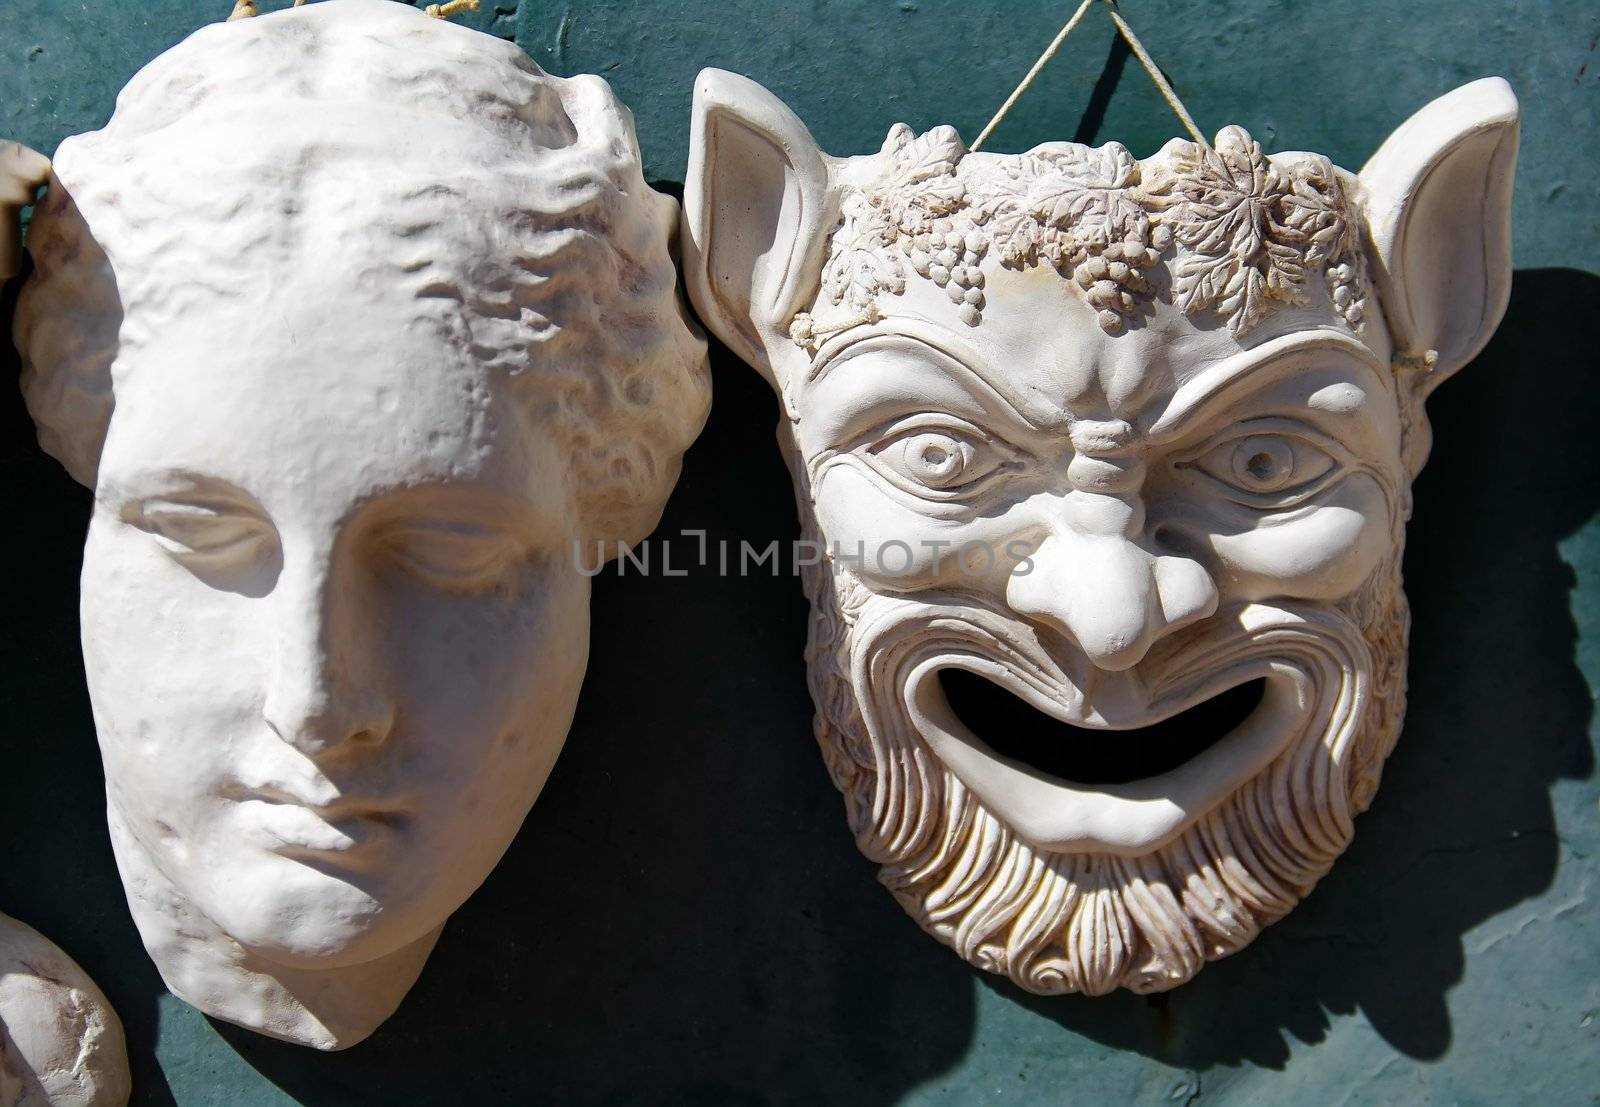 Greek masks by baggiovara